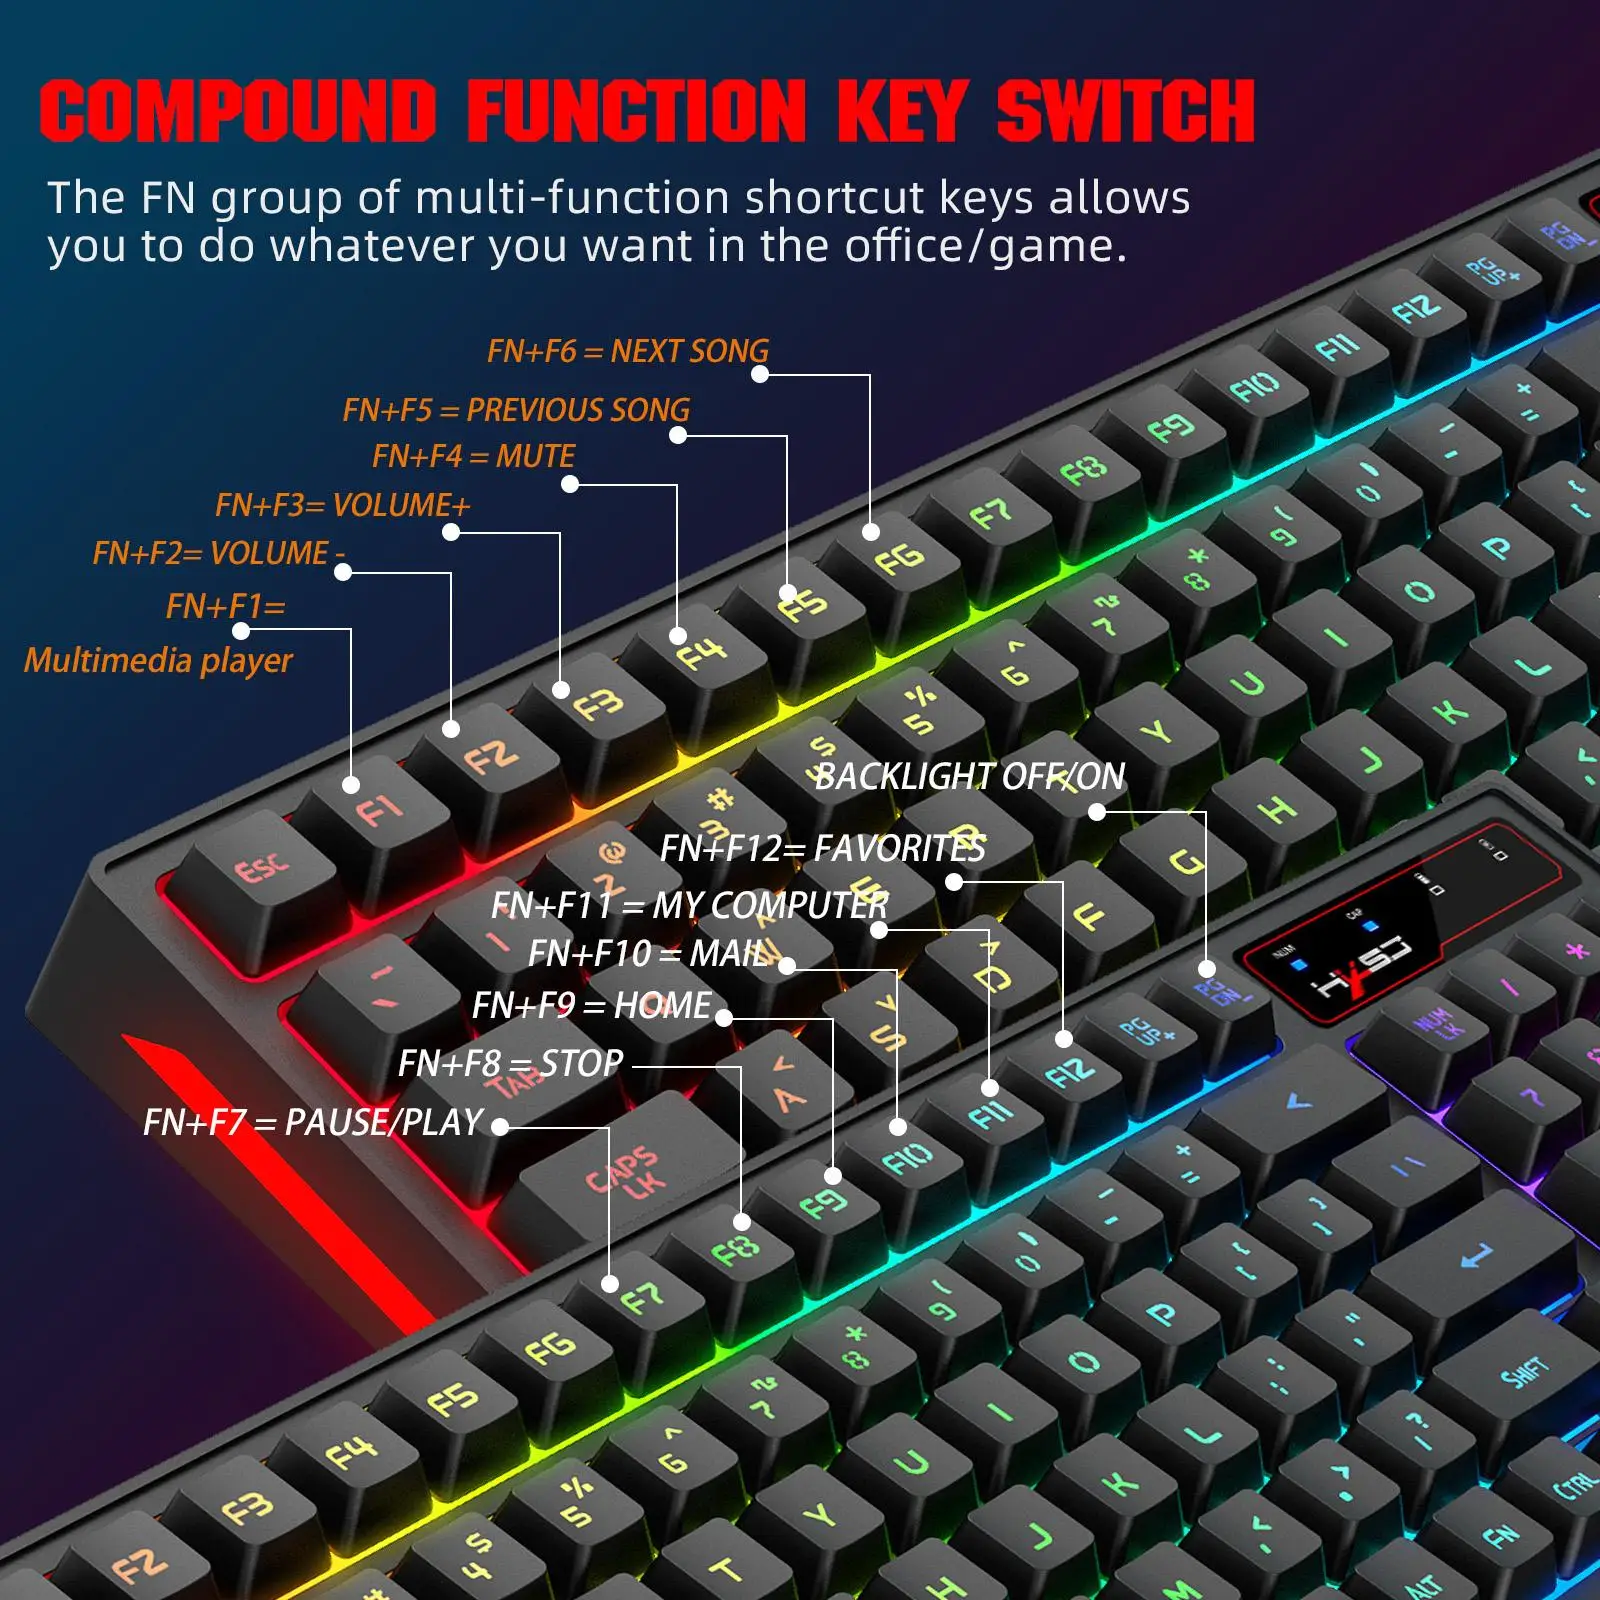 Keyboard Mouse Bundles RGB Backlit 3 Speed DPI Adjustment for PC Windows